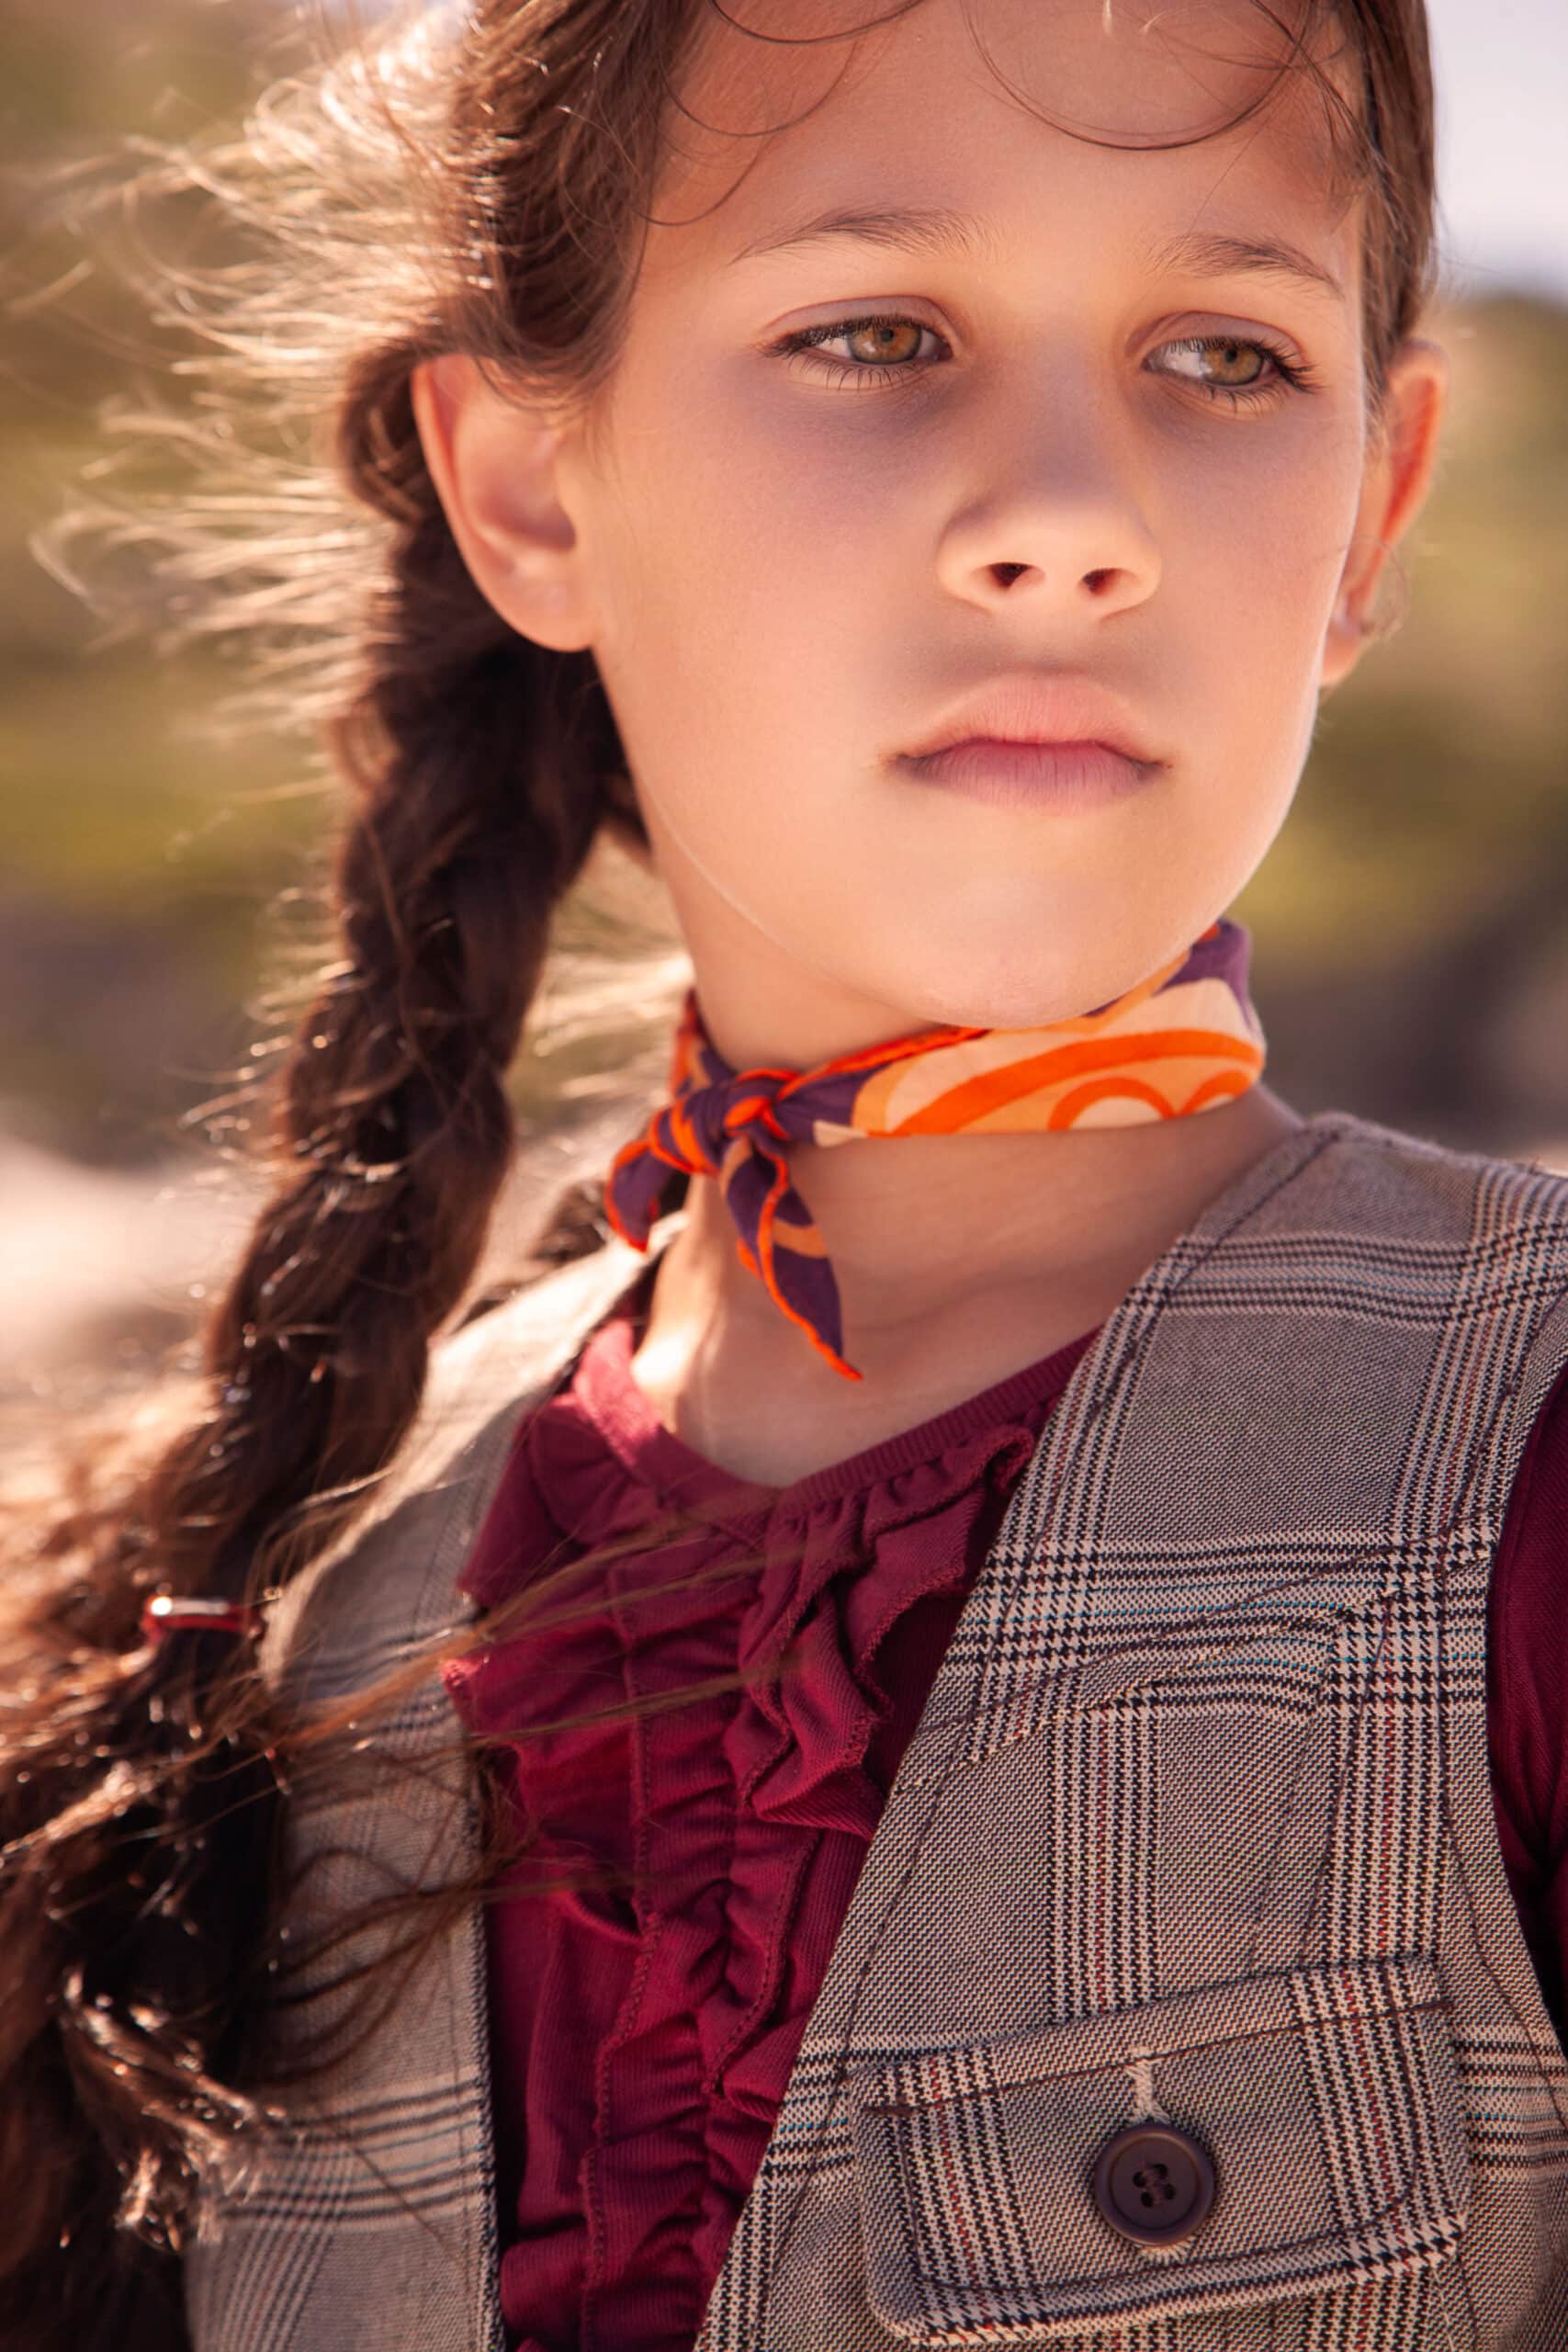 Ein junges Mädchen mit nachdenklichem Gesichtsausdruck, trägt eine Weste und eine kastanienbraune Rüschenbluse, hat einen bunten Schal um den Hals und ihr braunes Haar ist zu einem seitlichen Zopf geflochten. © Fotografie Tomas Rodriguez